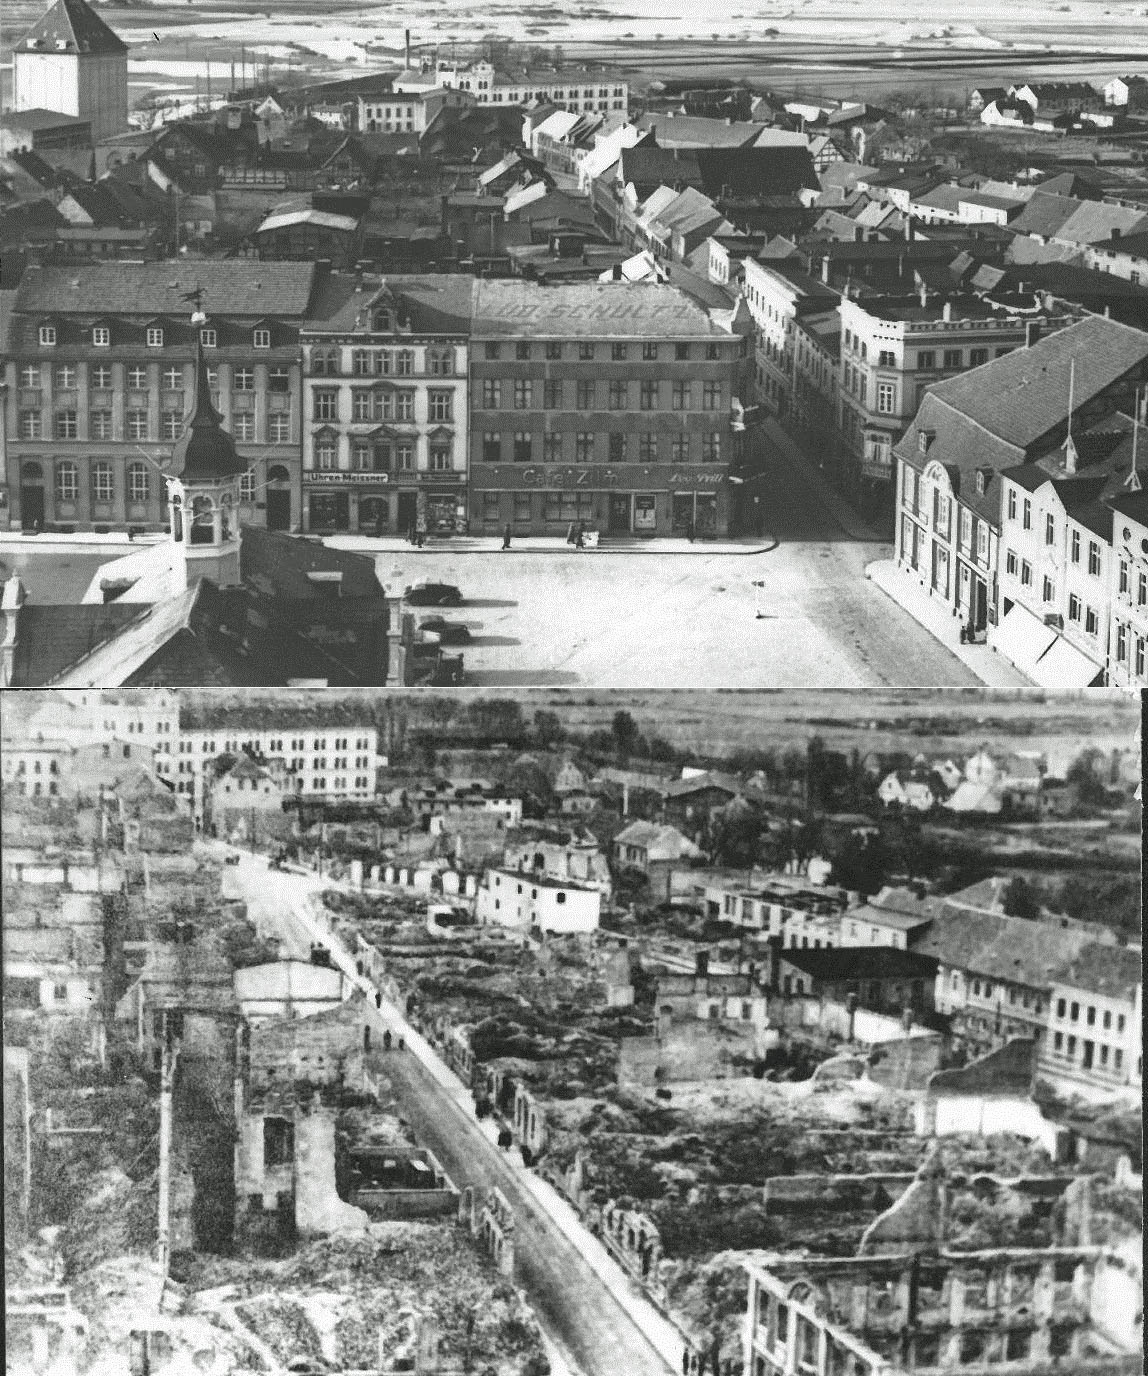 Imágenes que muestran cómo era Demmin antes y después de la llegada de los soviéticos.